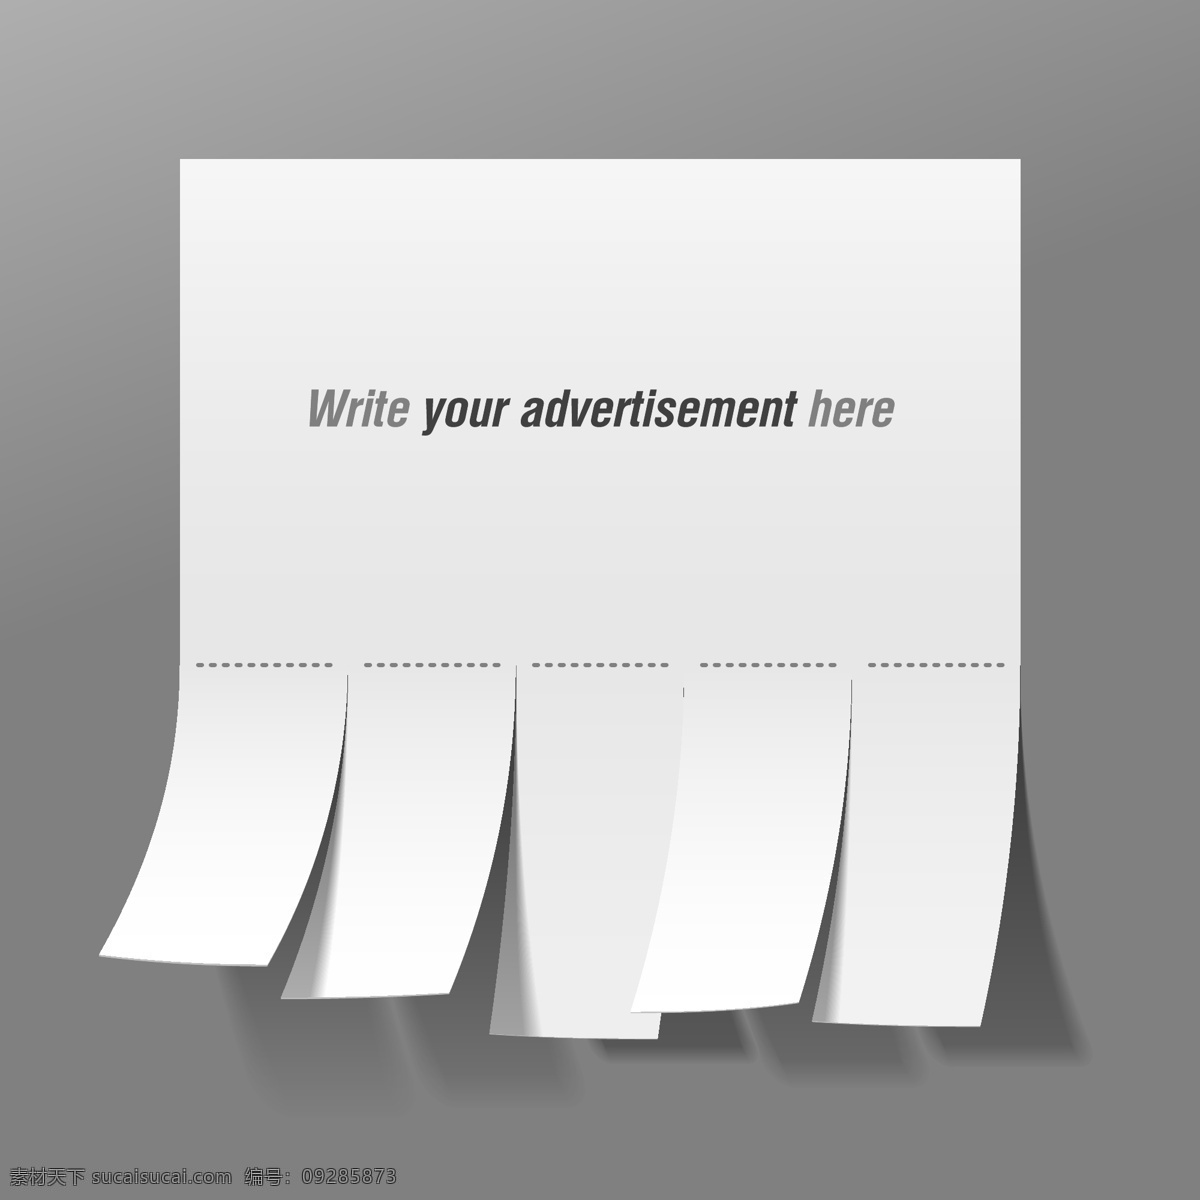 方便 广告纸 模板 矢量 广告 纸 方便的广告 纸模板 广告纸模板 向量 矢量图 其他矢量图